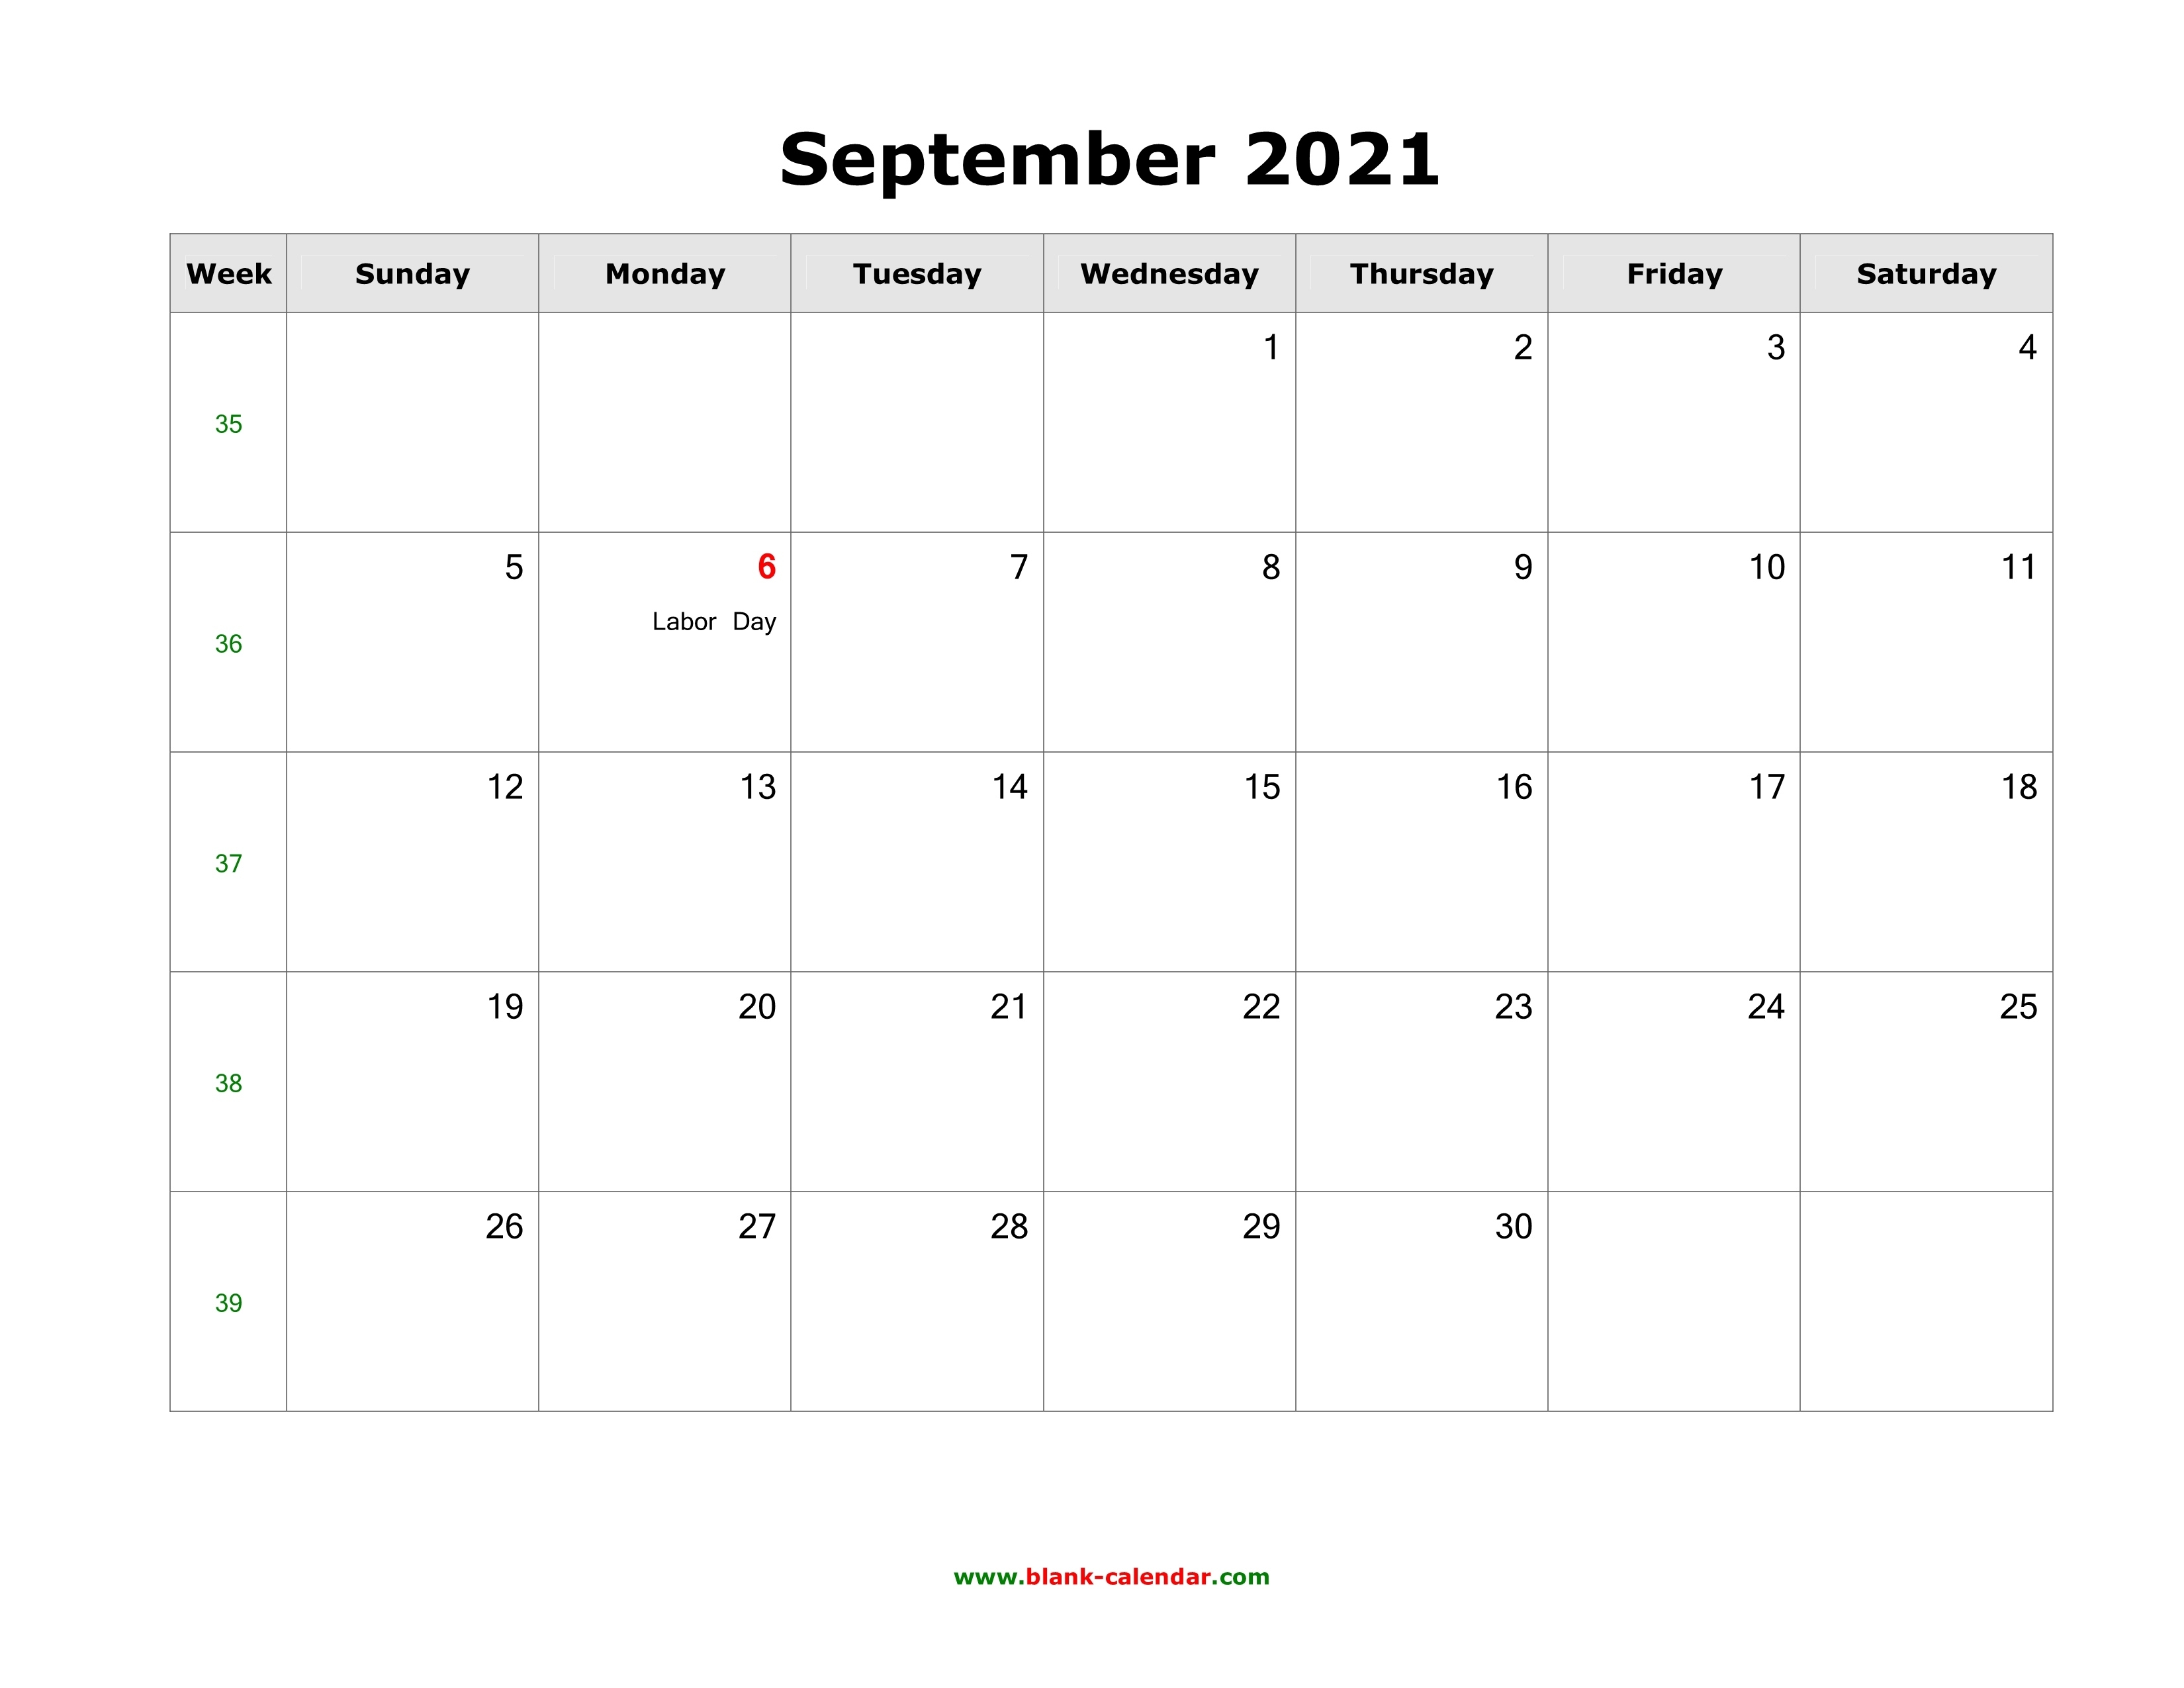 September 2021 Blank Calendar | Free Download Calendar Templates June Through September 2021 Calendar